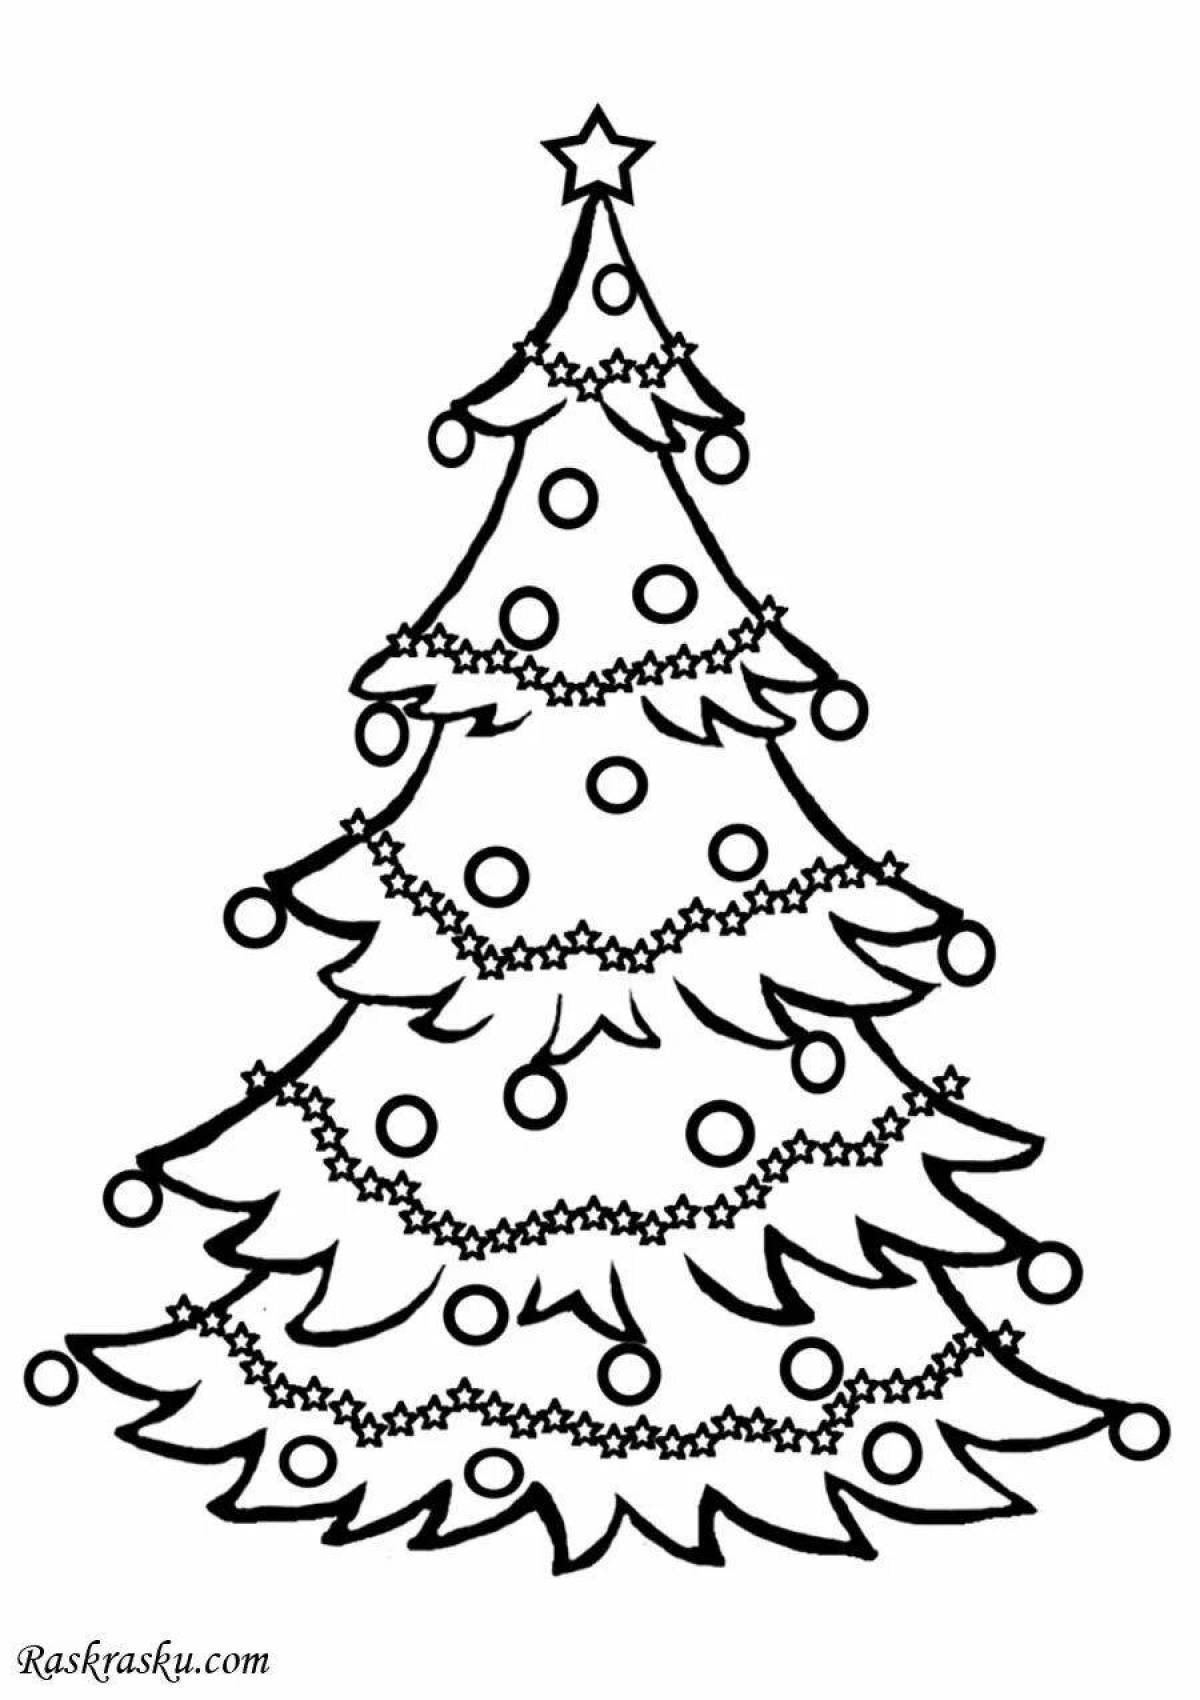 Увлекательный рисунок рождественской елки для детей